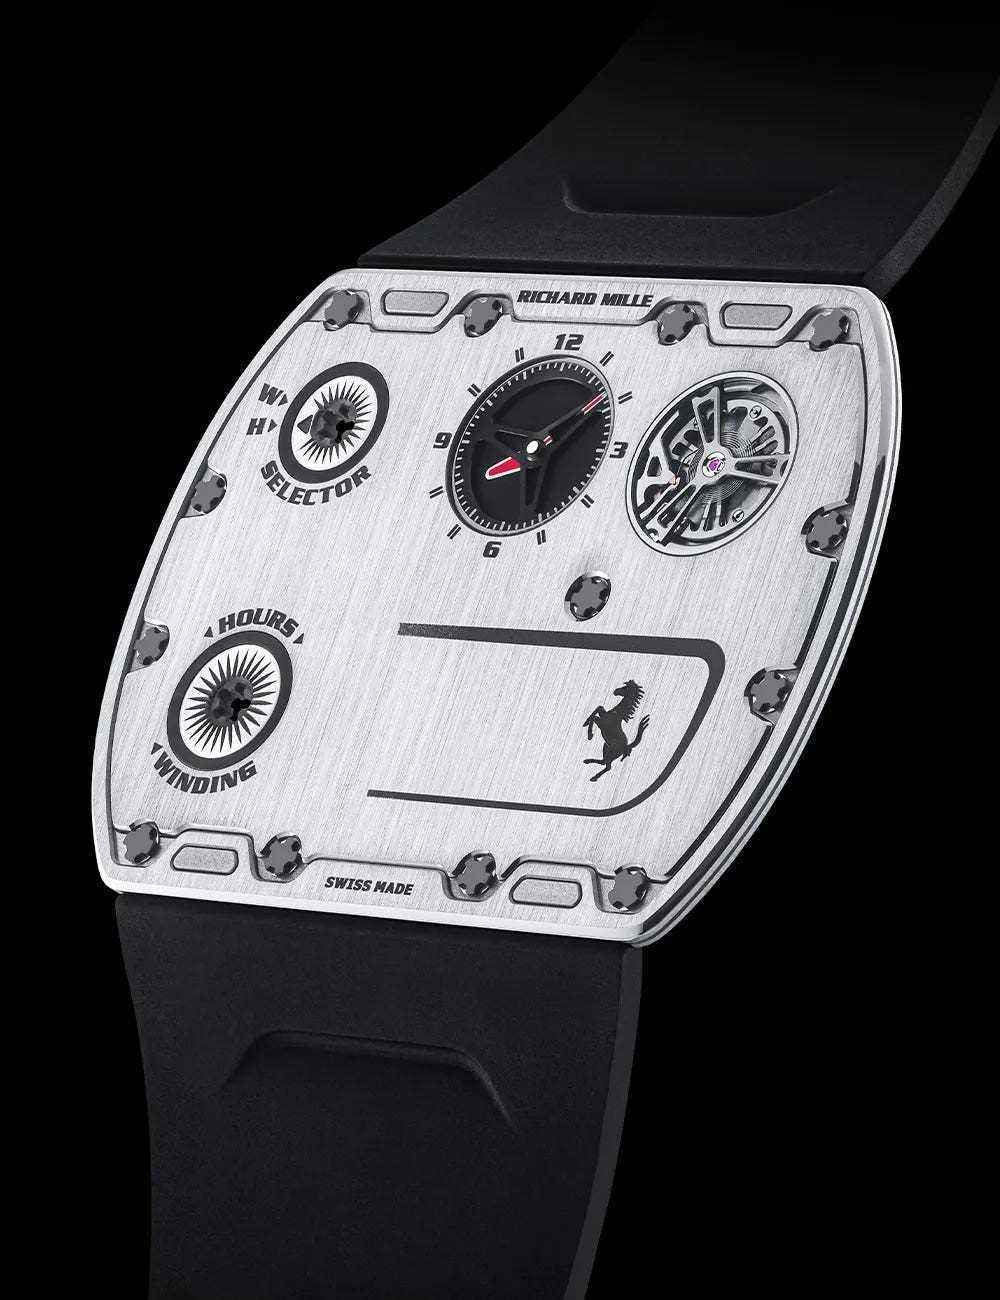 Eine Seitenansicht der ultradünnen mechanischen Uhr Richard Mille UP-01